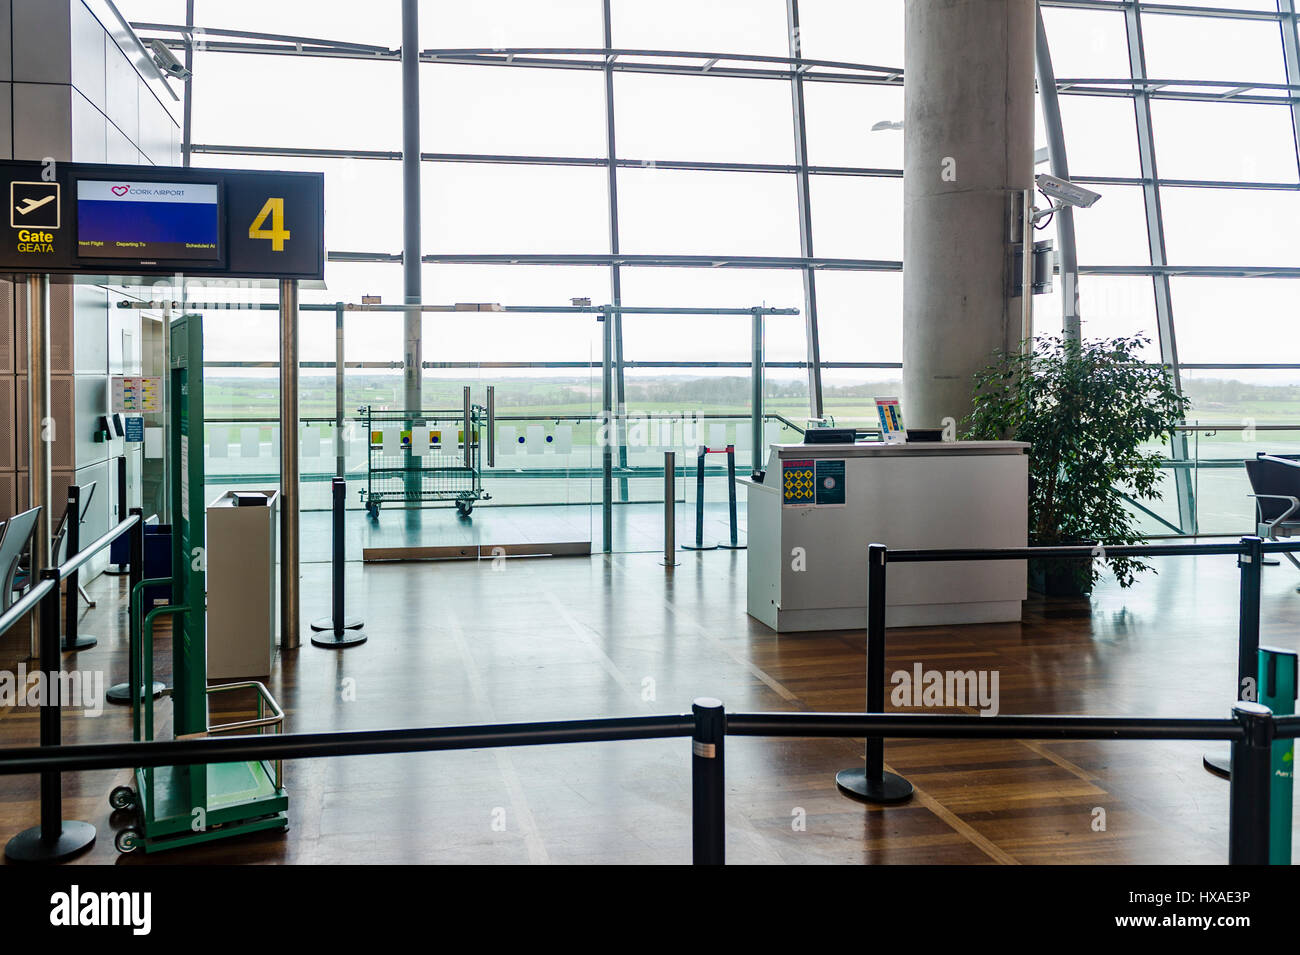 Gate 4 in sala partenze presso l'Aeroporto di Cork, Cork, Irlanda. Foto Stock